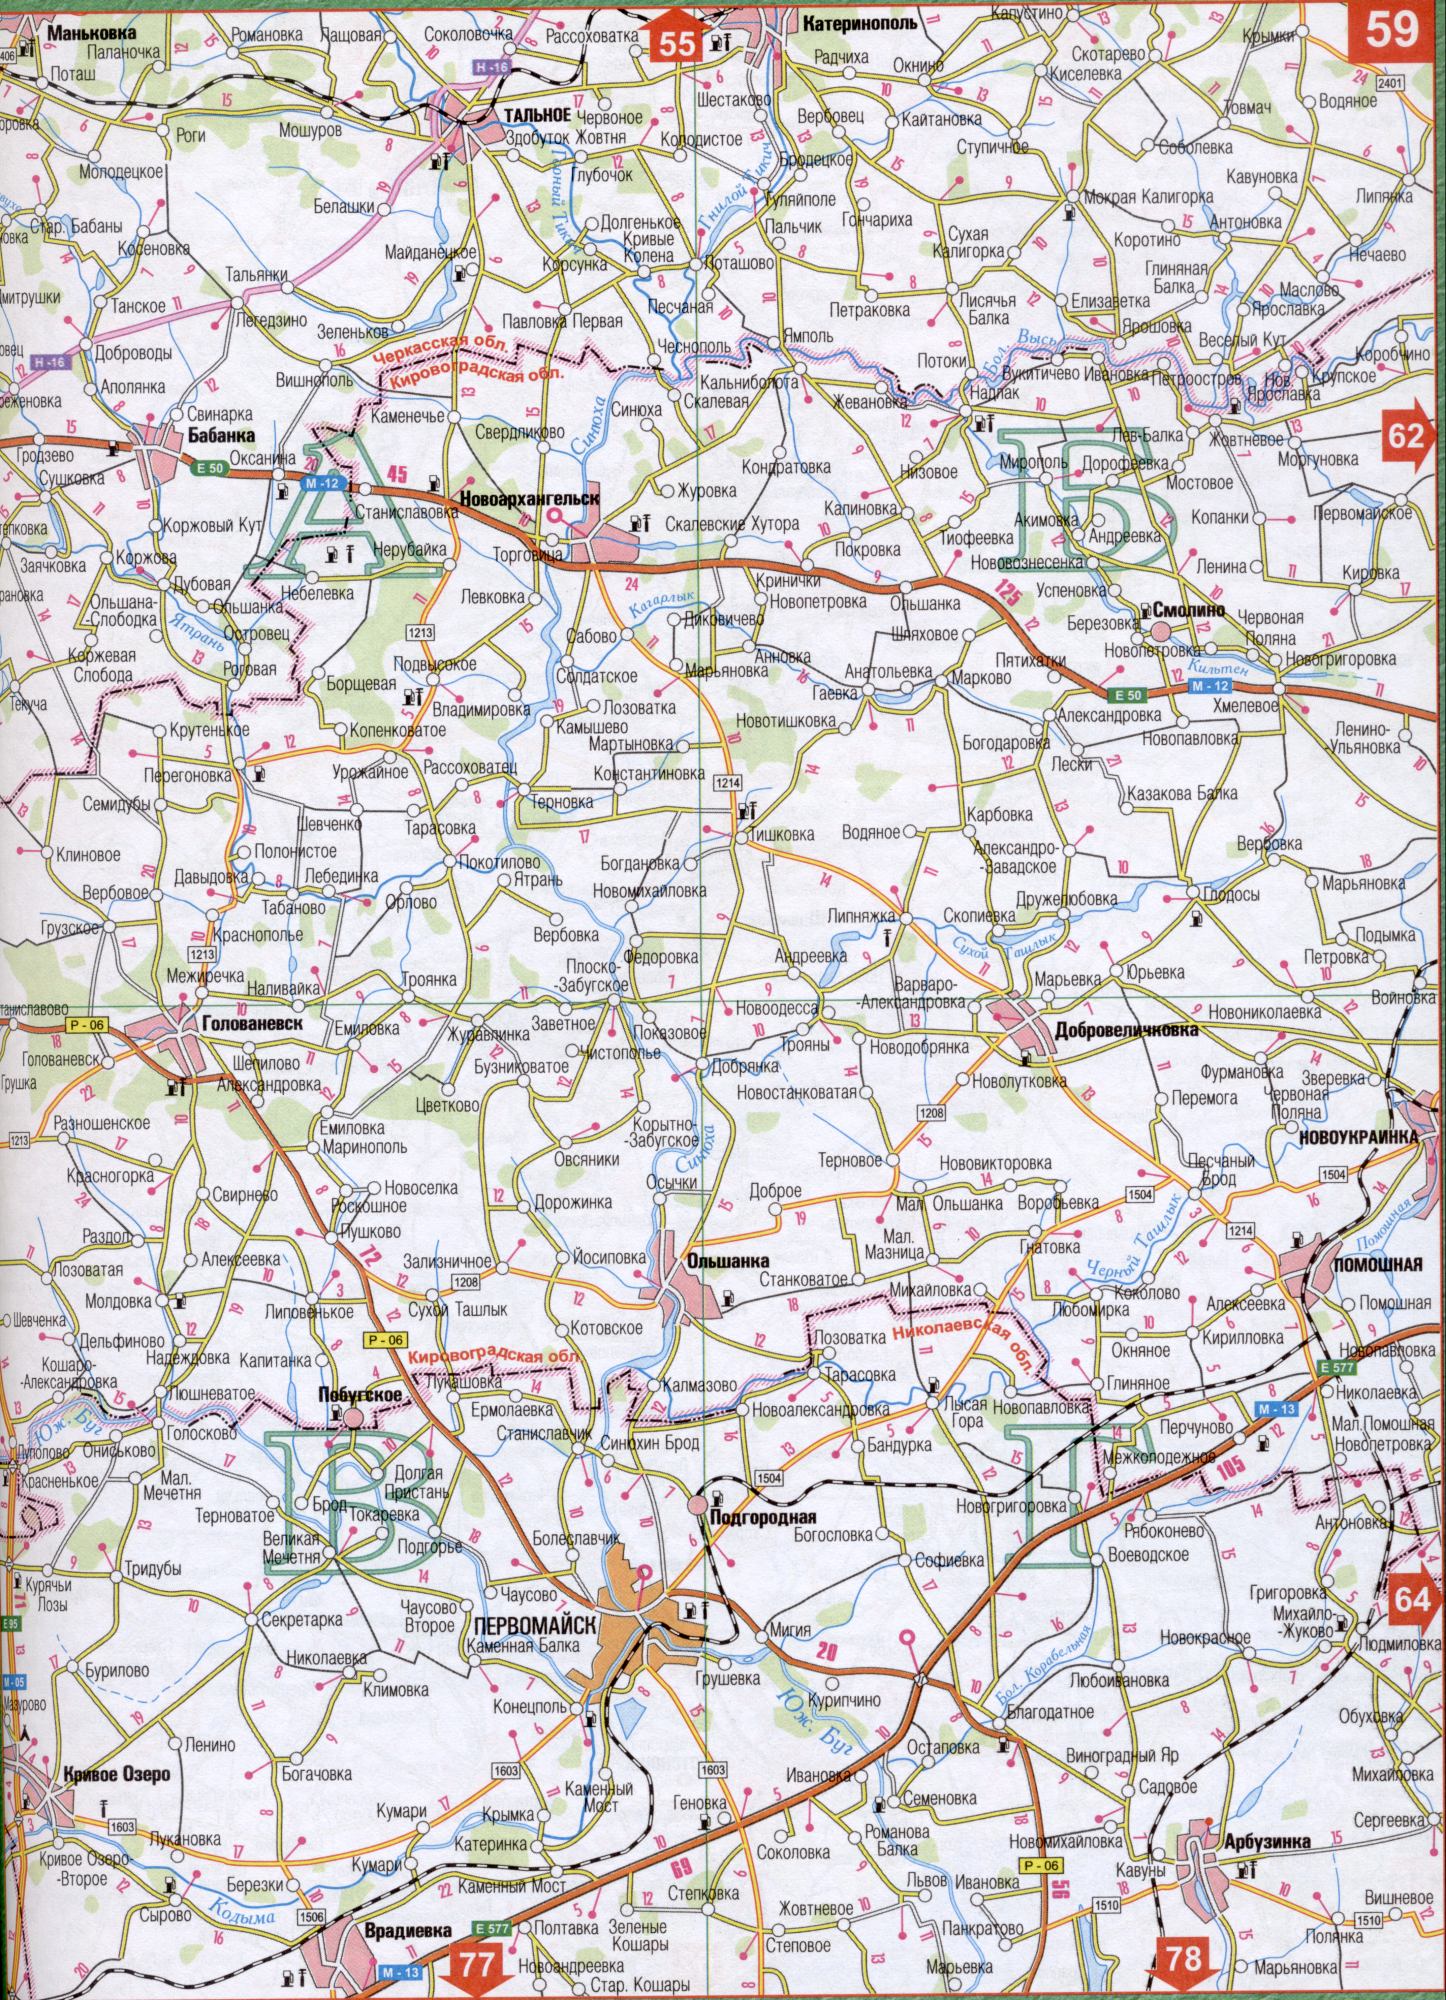 Karte von Kirowograd der Ukraine (Kirowograd Oblast Mitte). Laden Sie detaillierte Karte Yatran, Kagarlyk, Kodyma, kilt, Chemische Tashlyk.